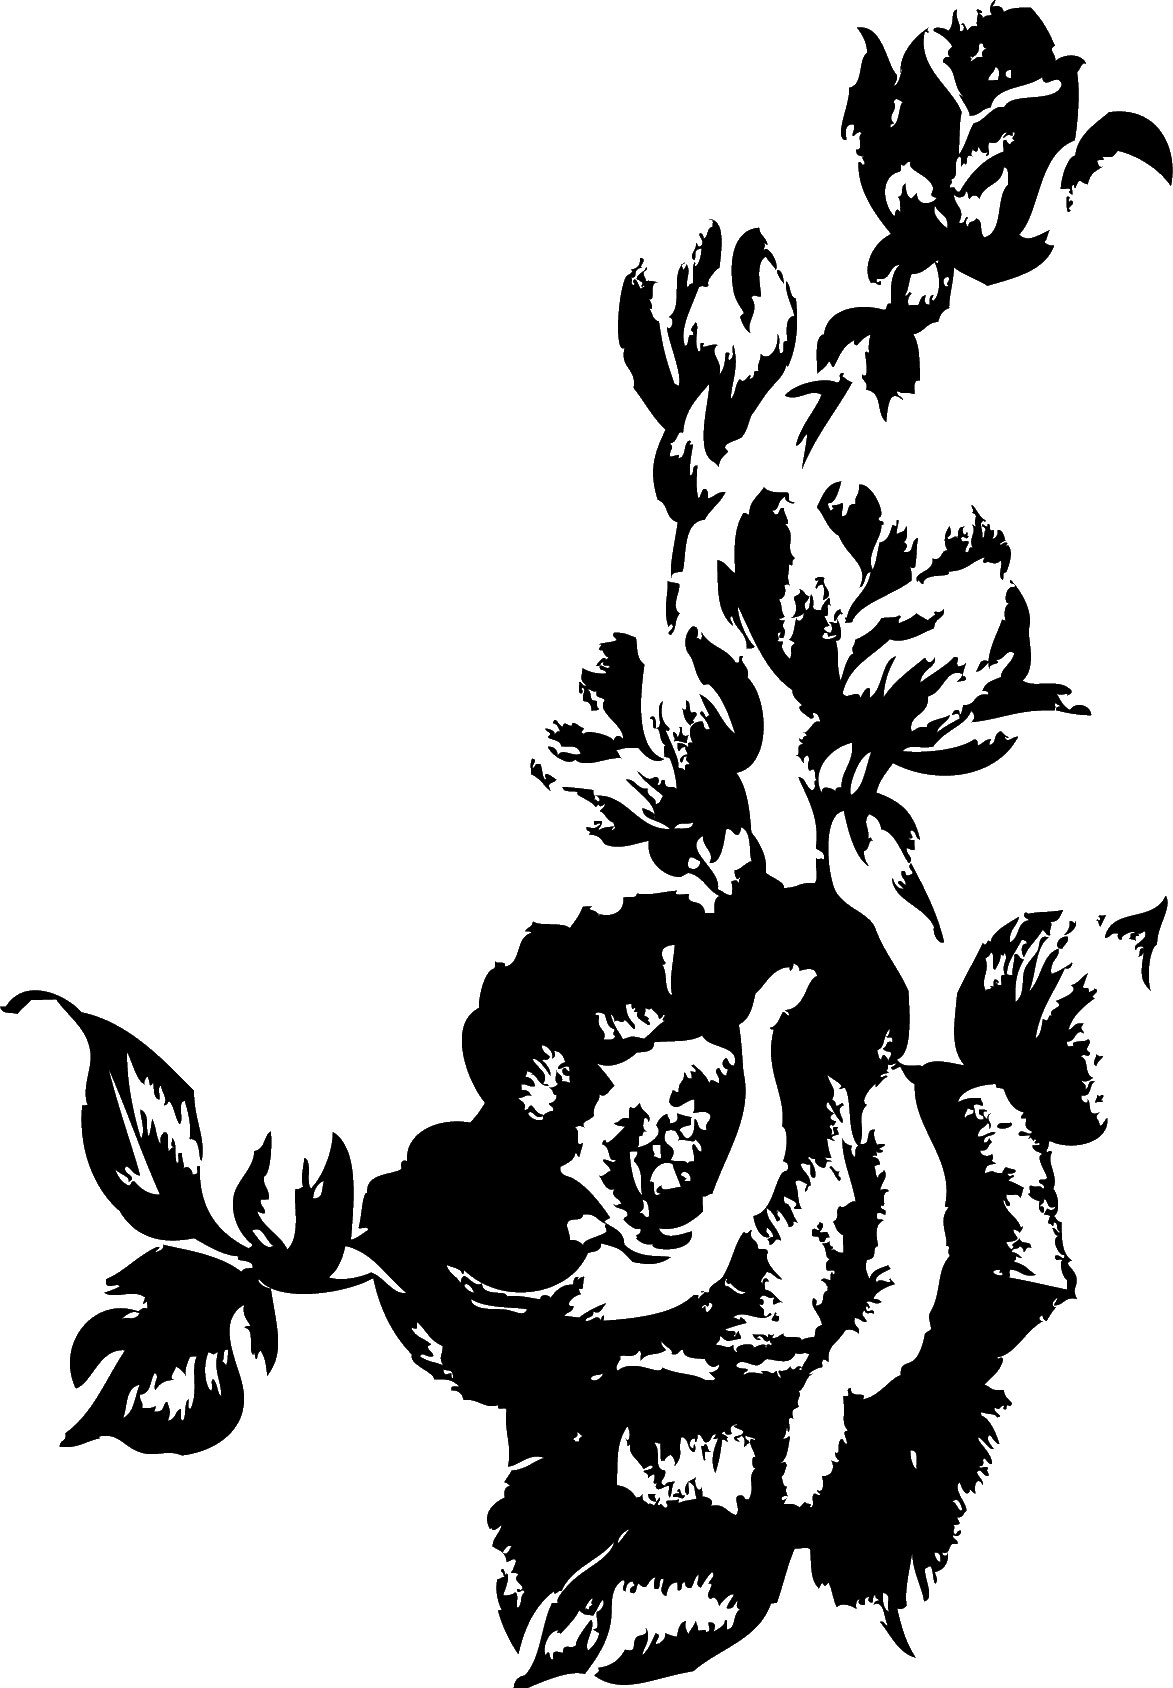 バラの画像 イラスト 白黒 モノクロ No 737 版画風のバラ